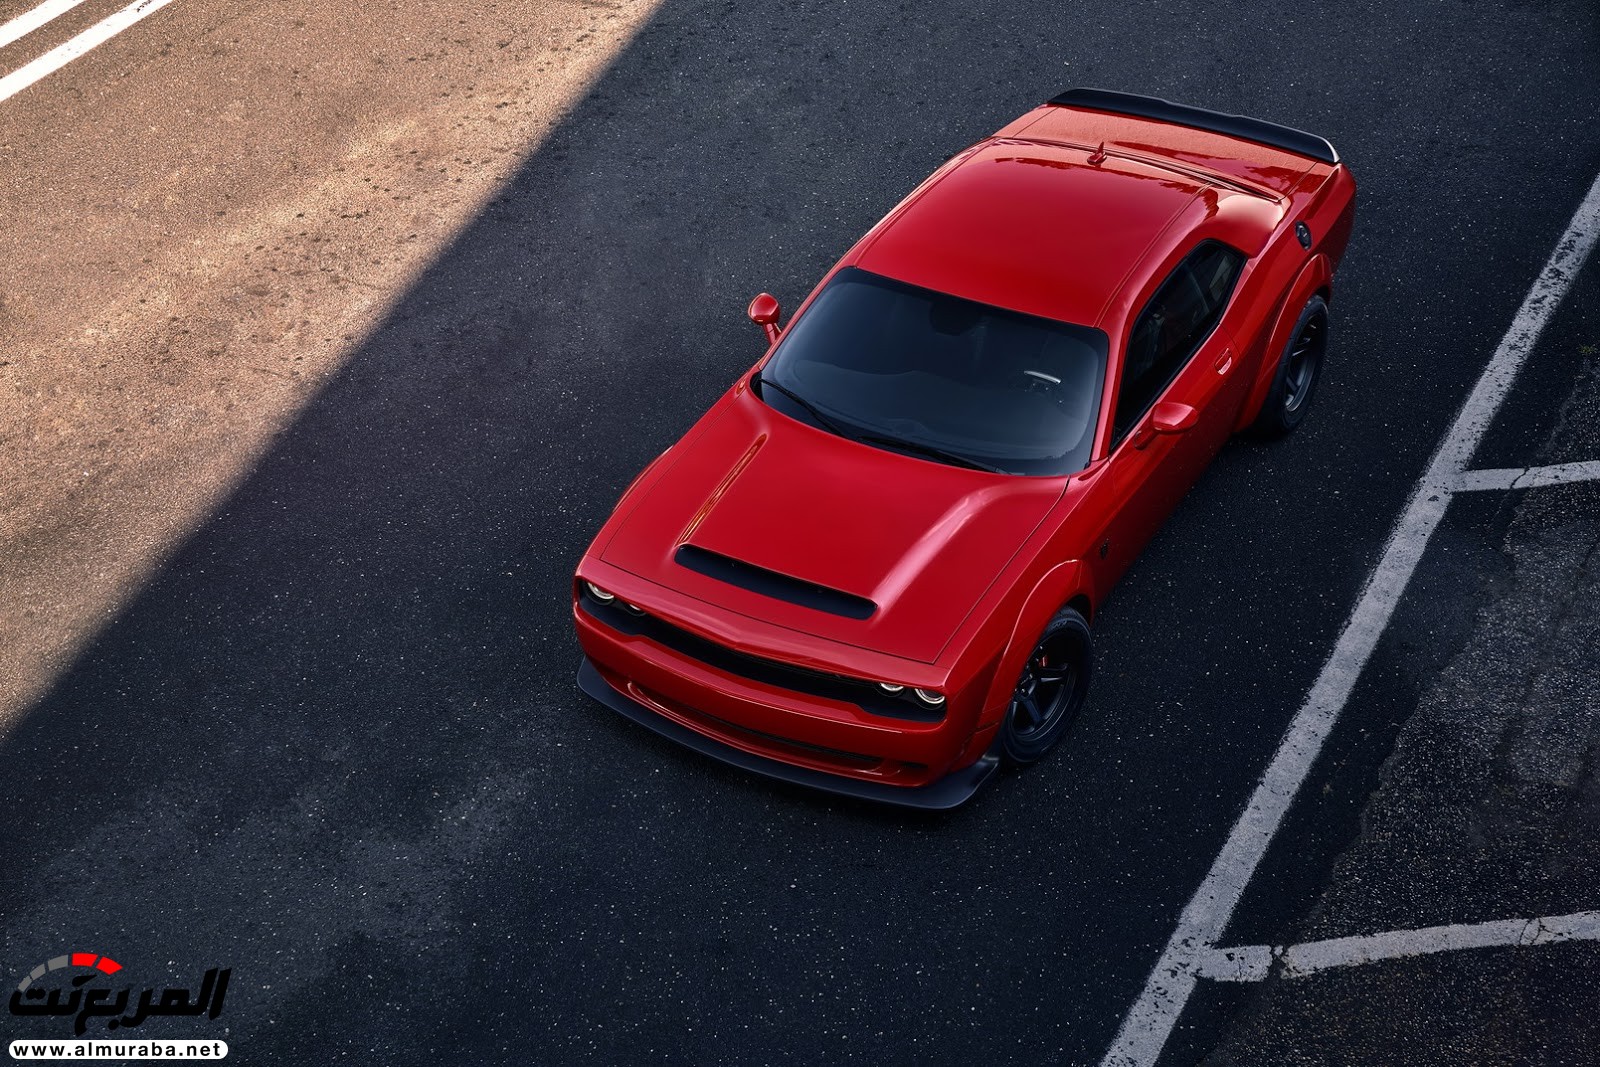 "فيديو وصور" دودج تشالنجر SRT 2018 ديمون نسخة الشيطان تكشف نفسها بقوة 840 حصاناً Dodge Challenger SRT Demon 23